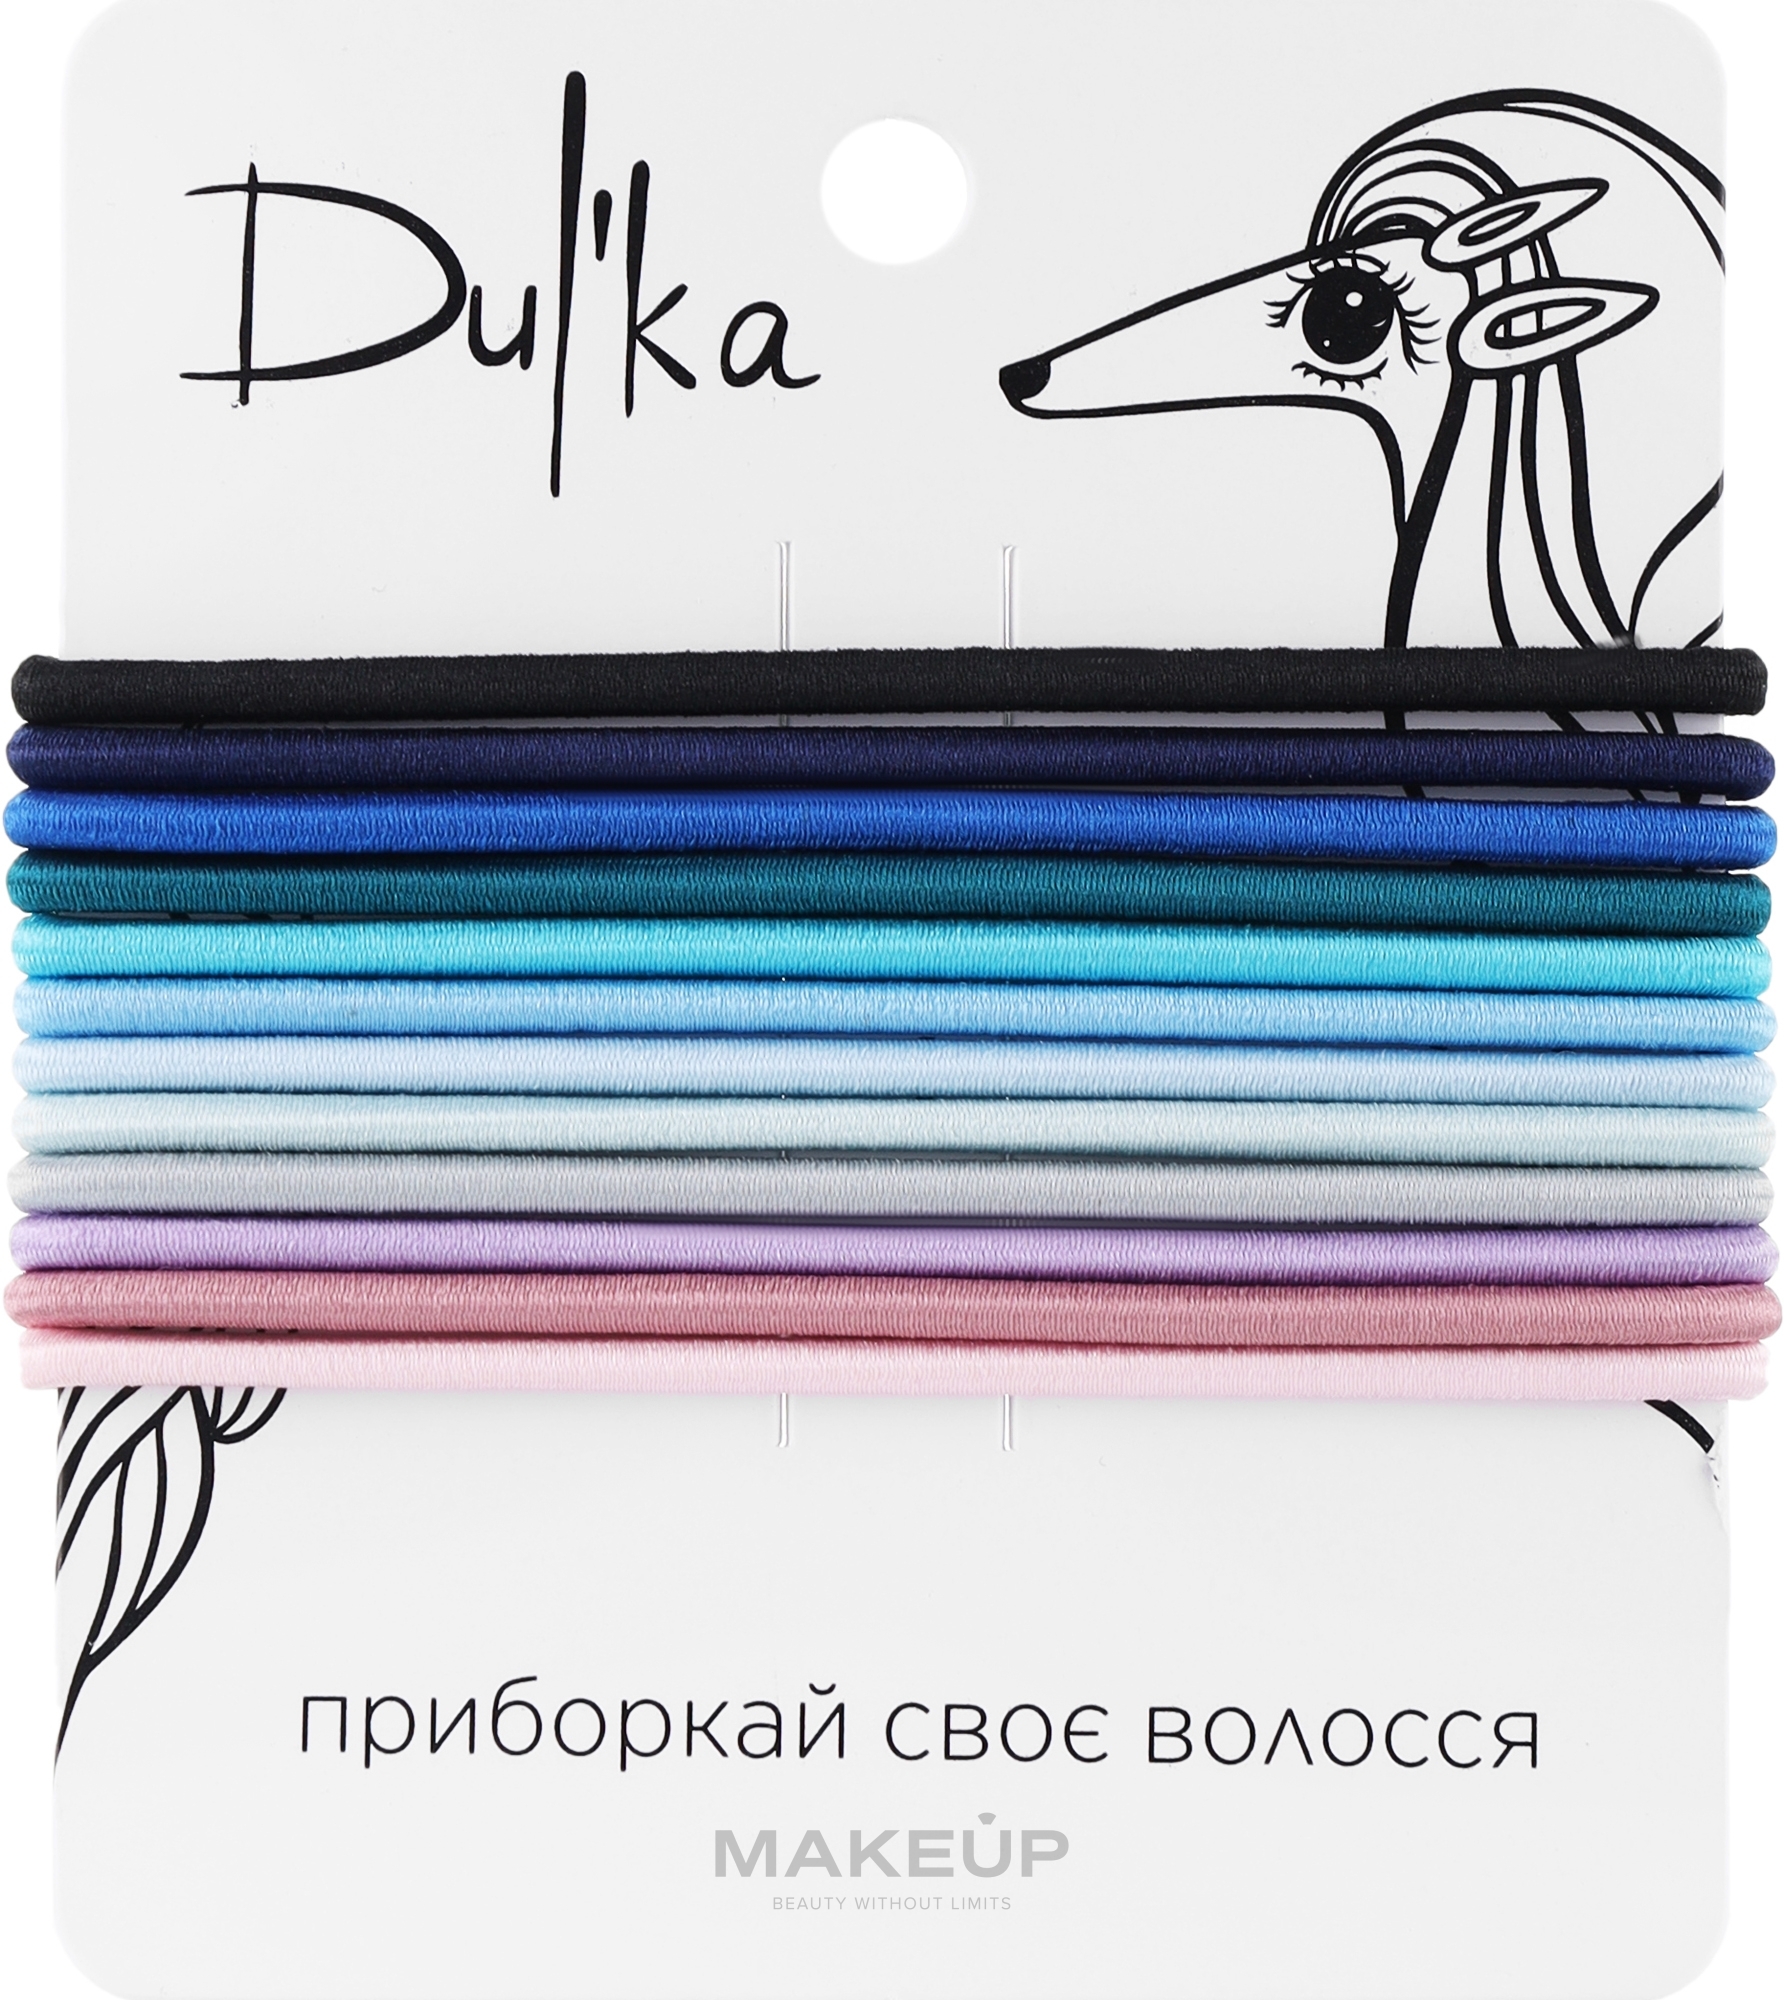 Набор разноцветных резинок для волос UH717711, 12 шт - Dulka  — фото 12шт